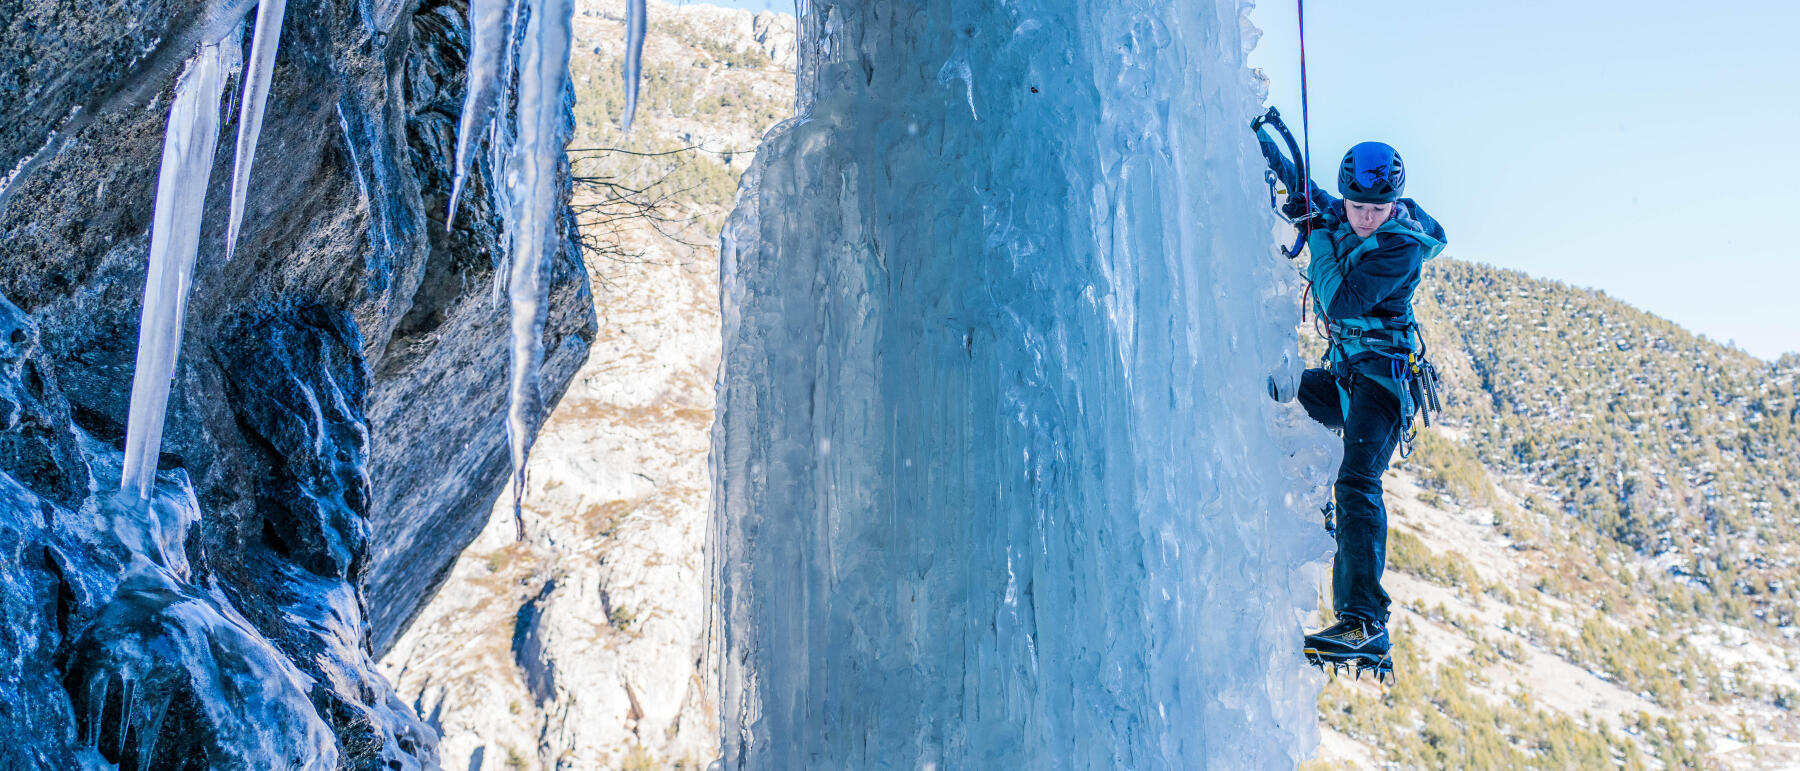 Alpinista na cascata de gelo